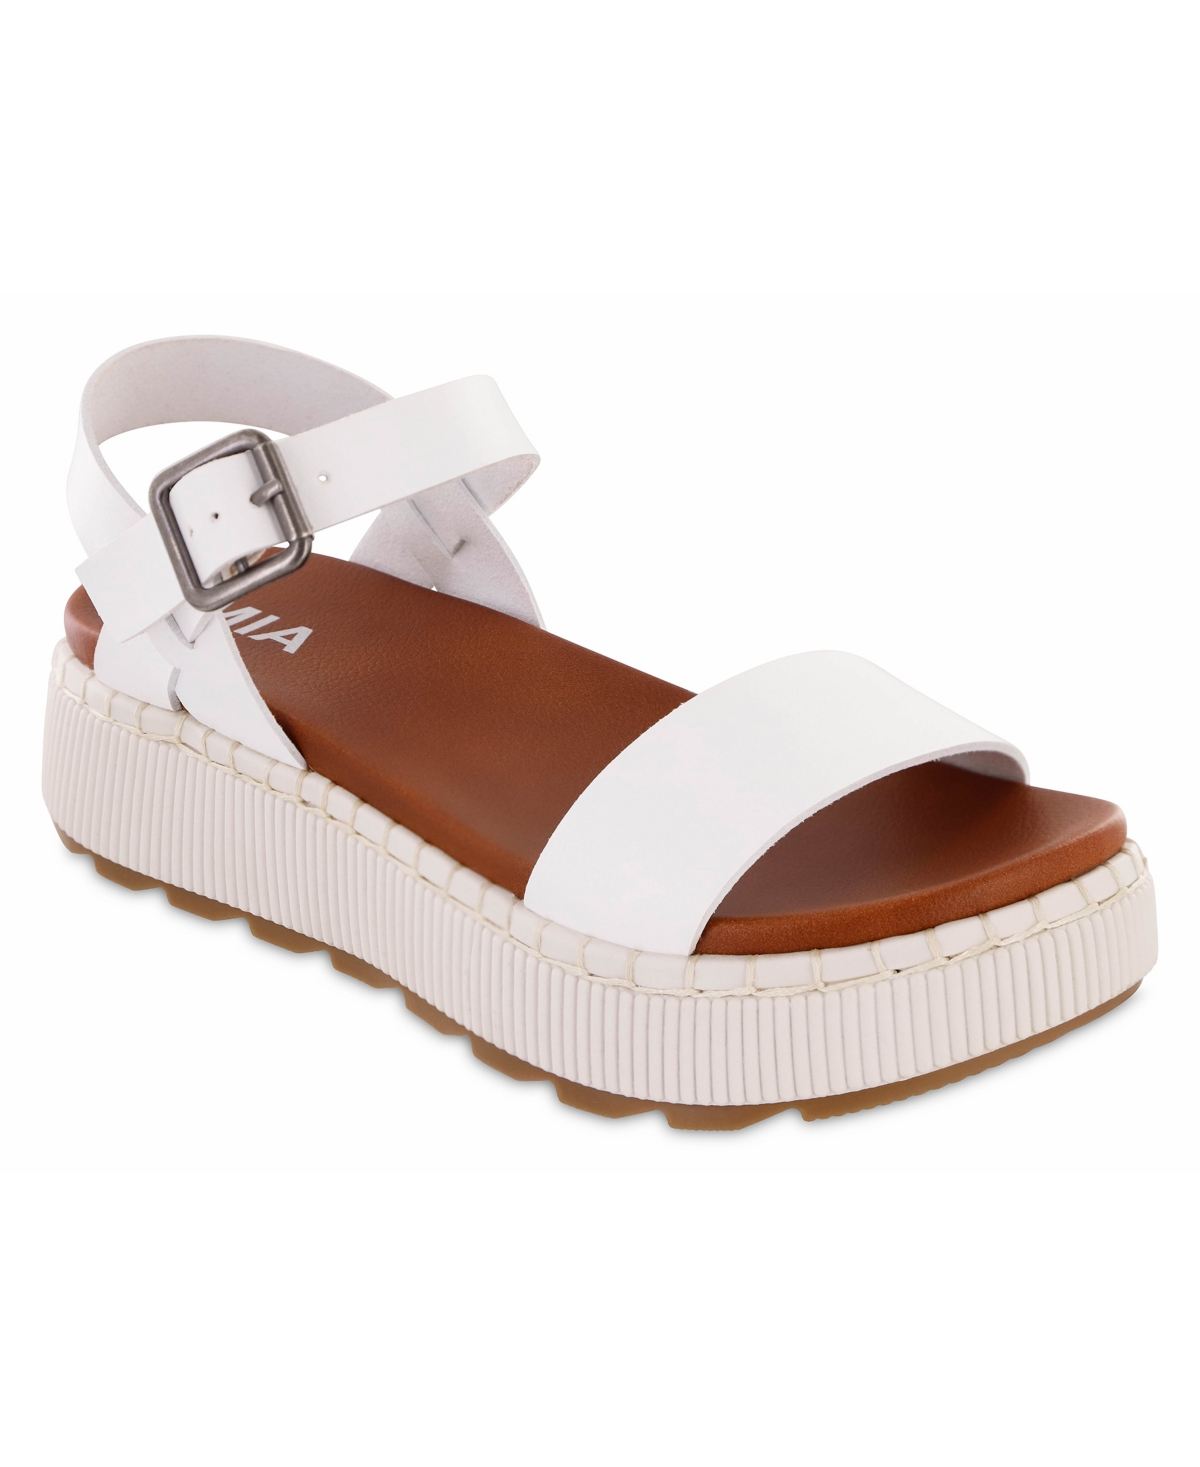 Women's Hayley Platform Sandals - White